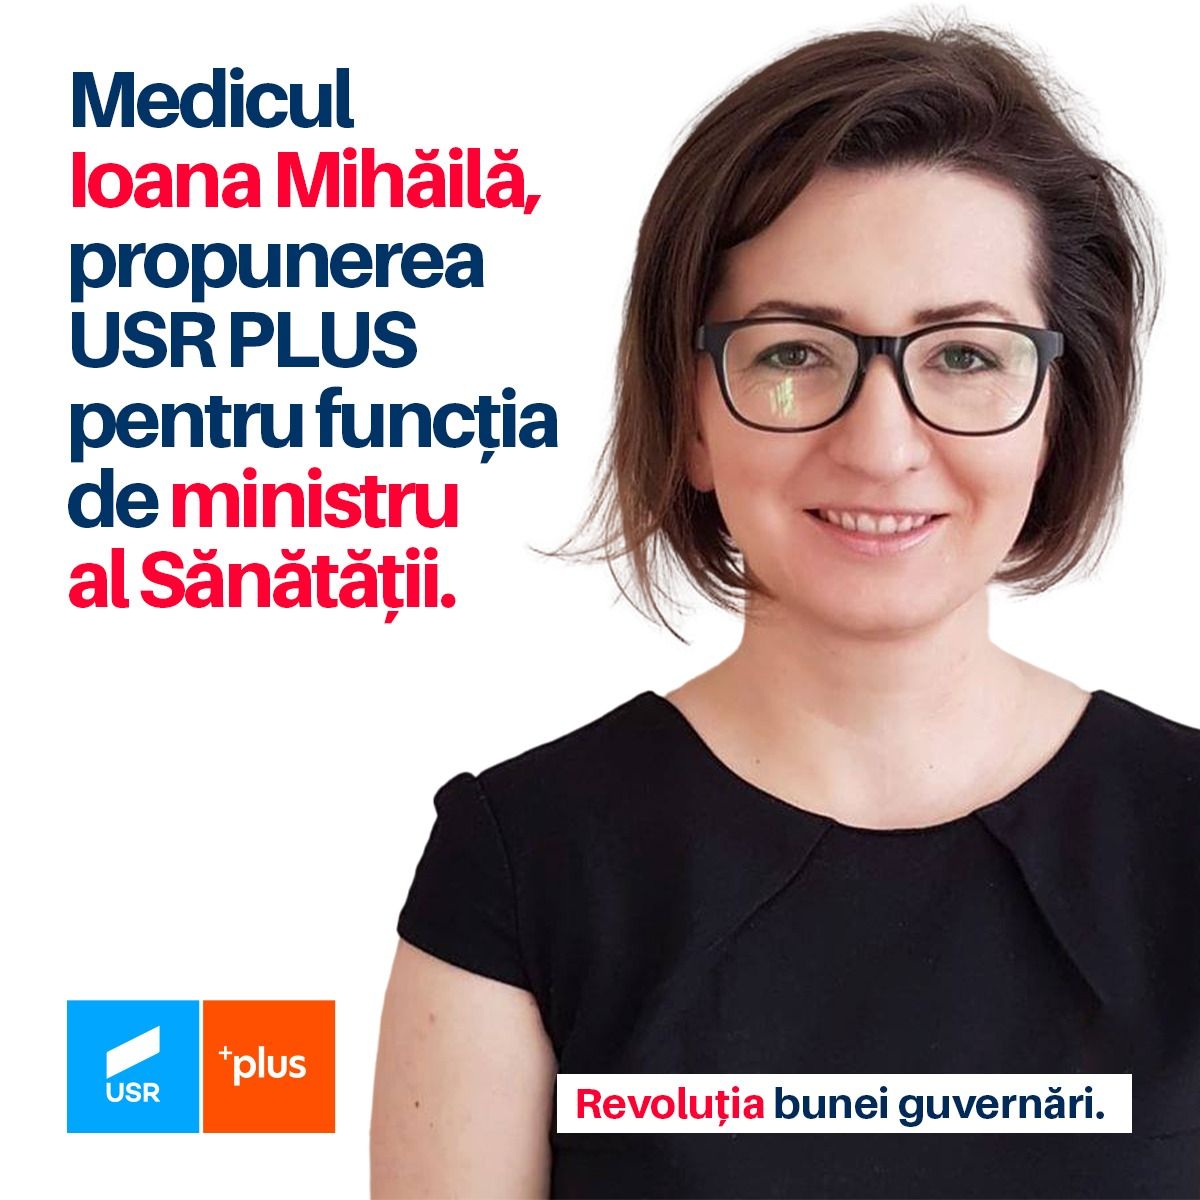 Cine este Ioana Mihăilă, propunerea făcută pentru Ministerul Sănătății